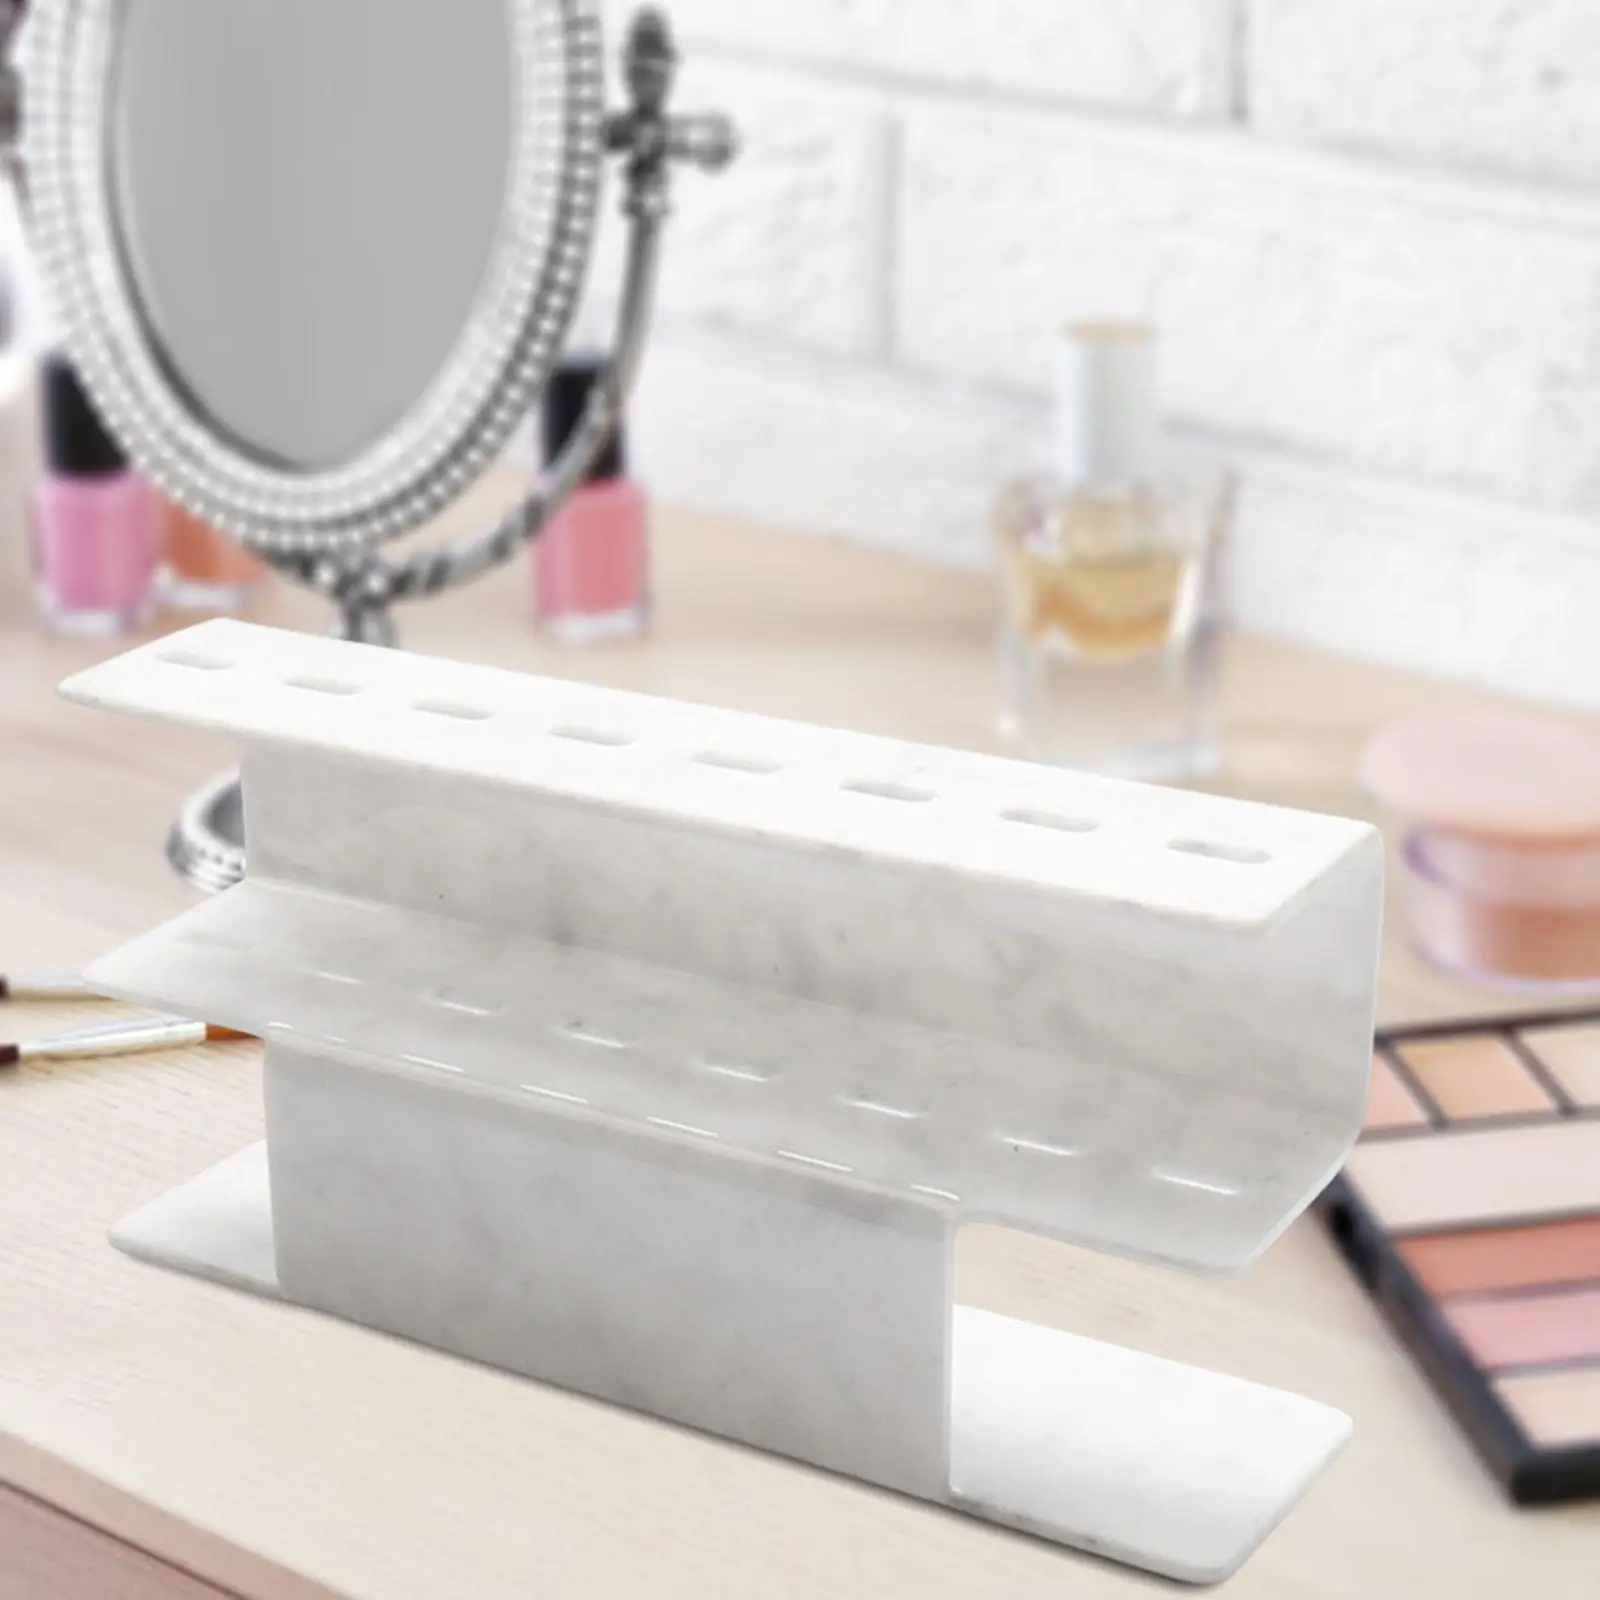 Acrylic Eyelash Grafting Tweezers Stand 8 Holes Makeup Accessories Tweezer Holder for Dresser